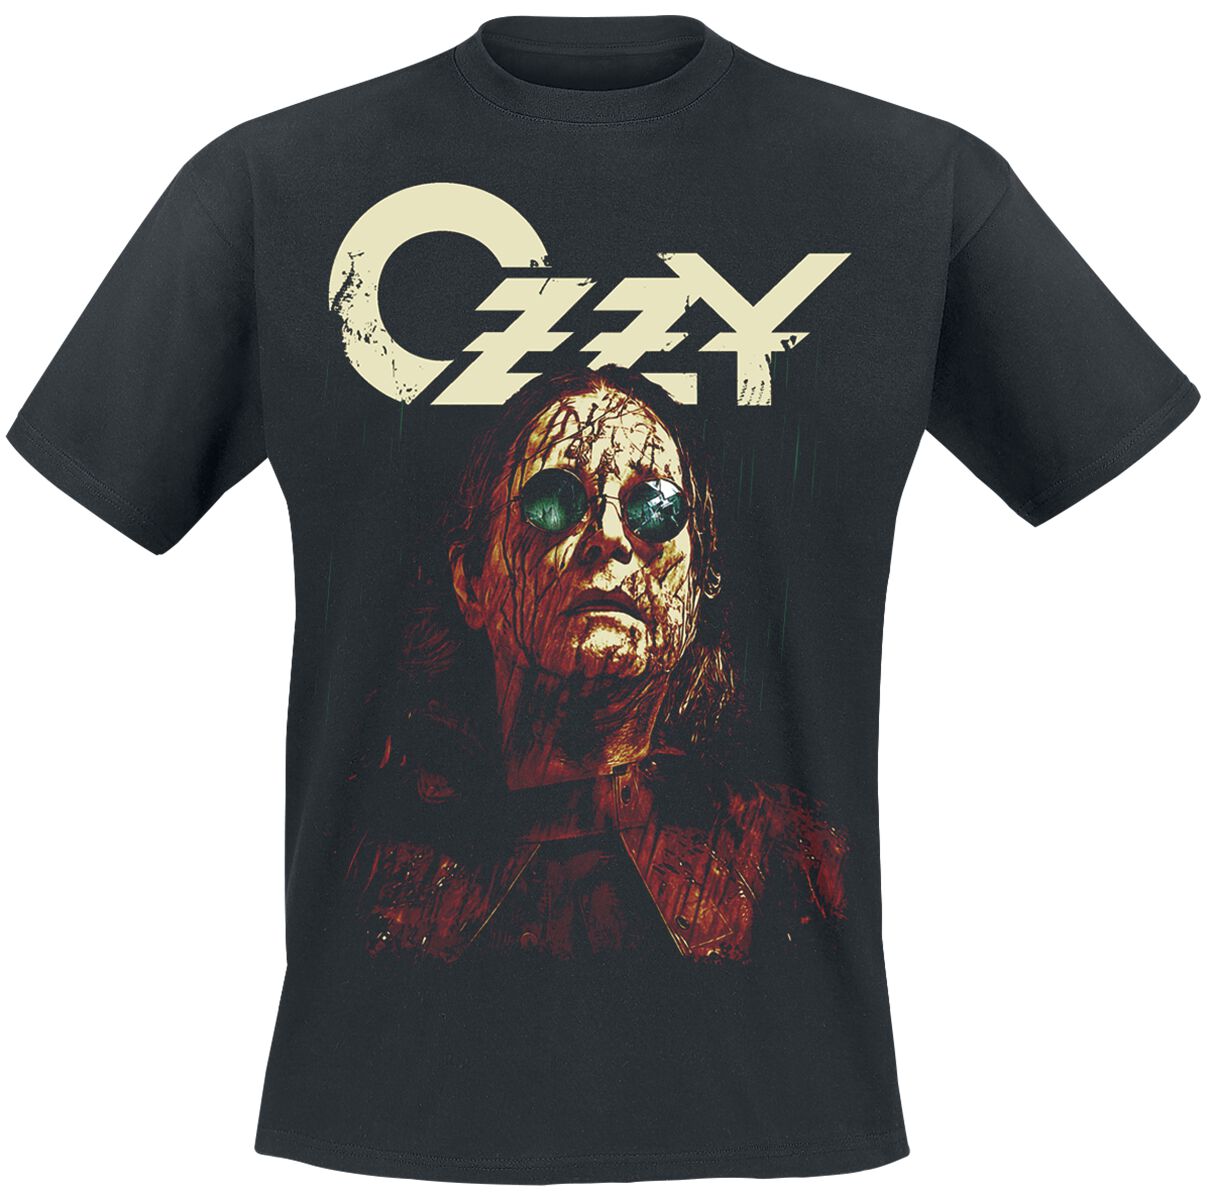 Ozzy Osbourne T-Shirt - Black rain - S bis L - für Männer - Größe L - schwarz  - Lizenziertes Merchandise!